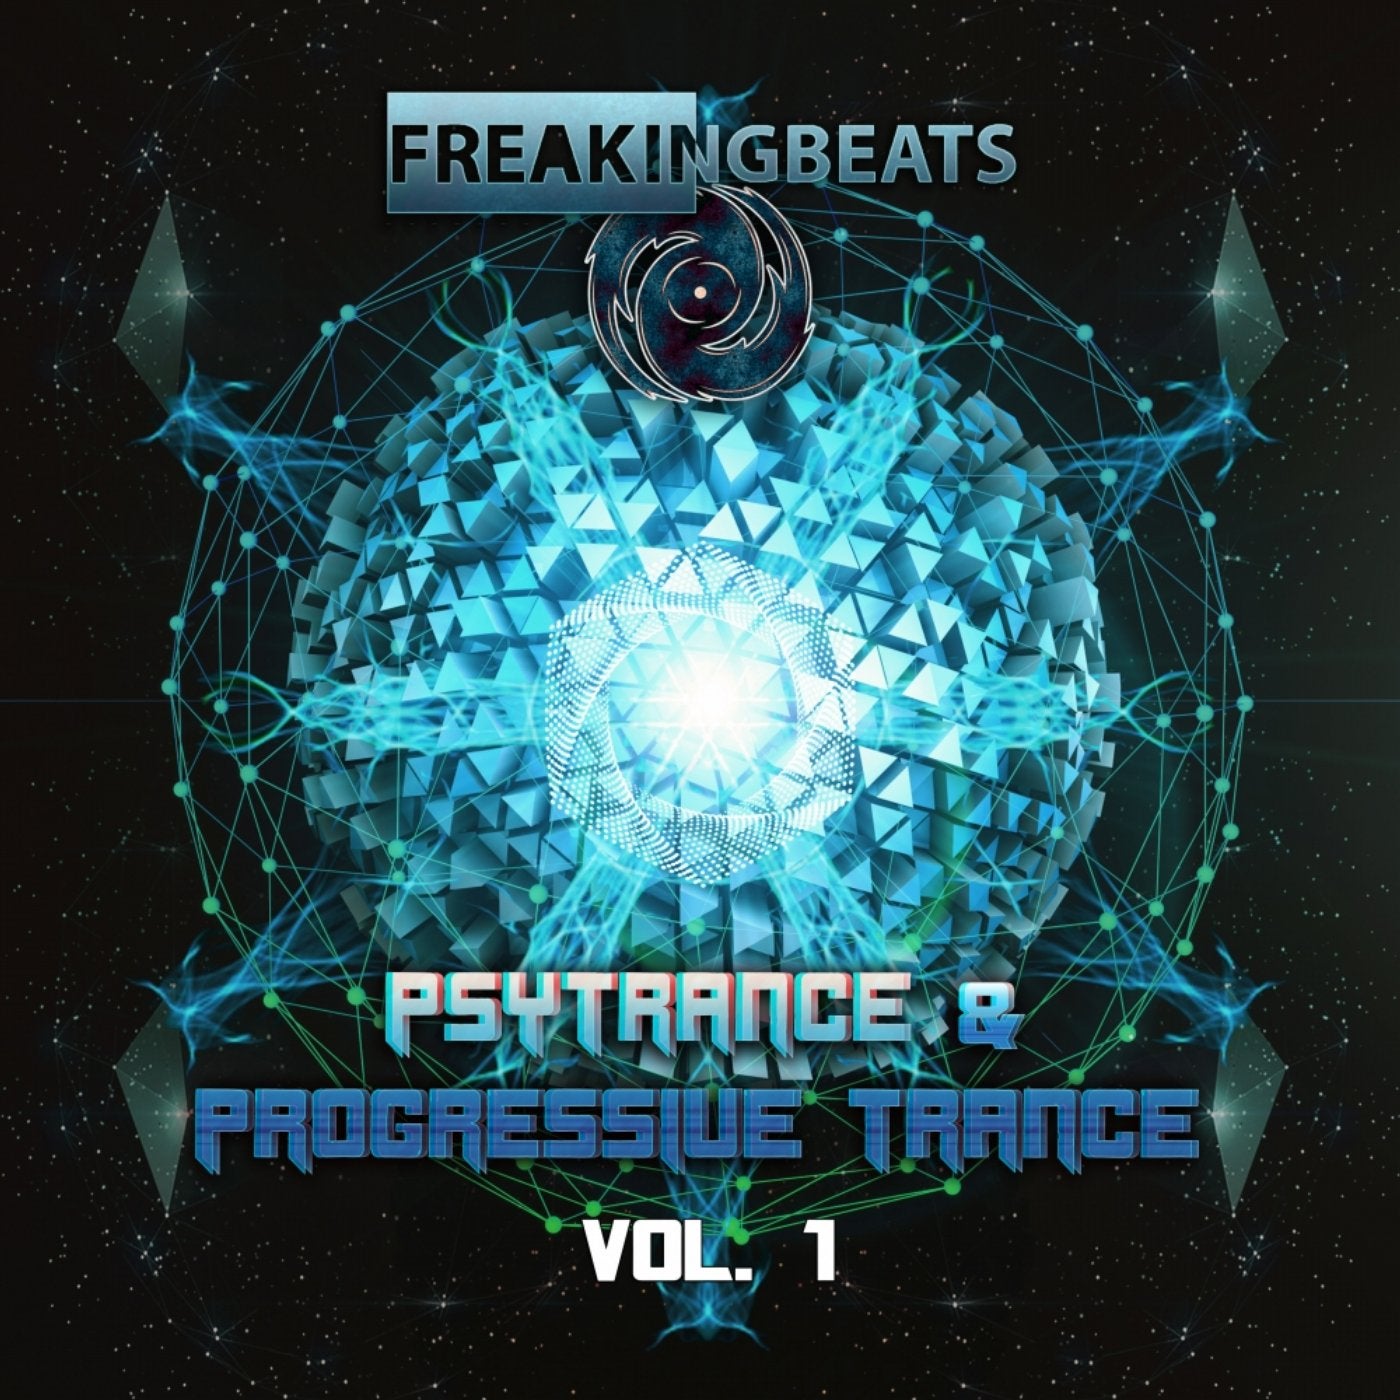 Psytrance & Progressive Trance, Vol. 1